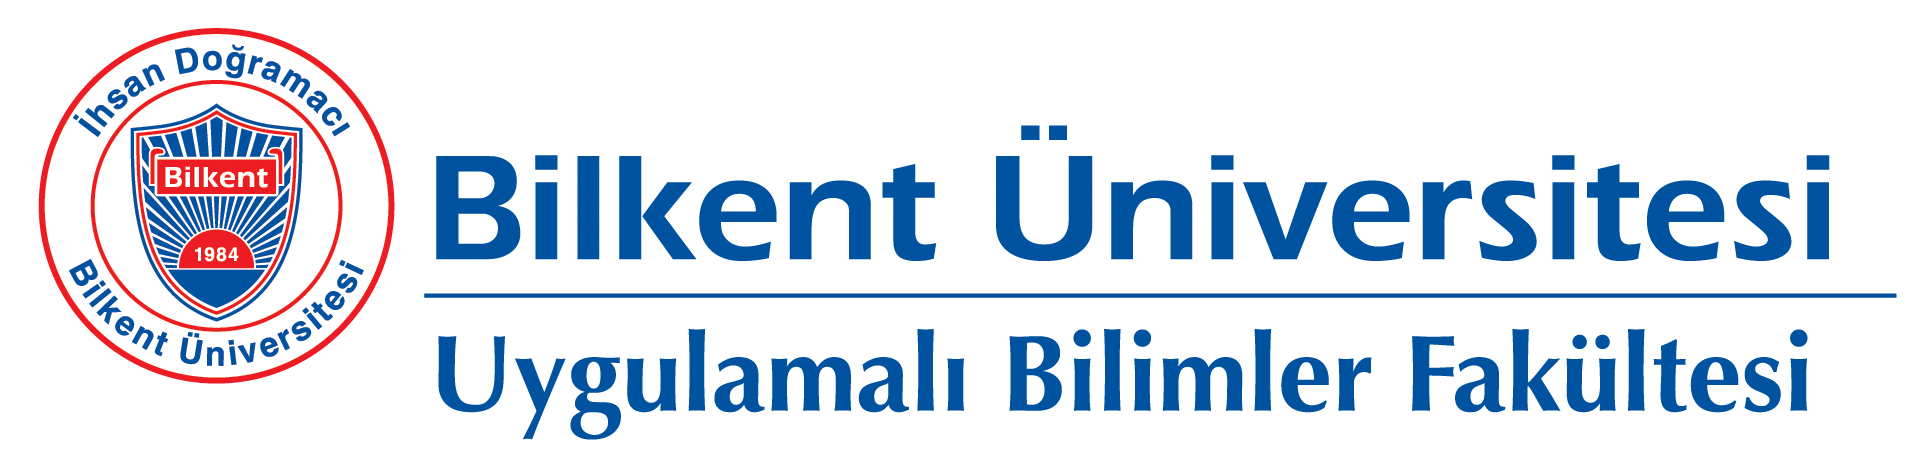 Logo for Uygulamalı Bilimler Fakültesi